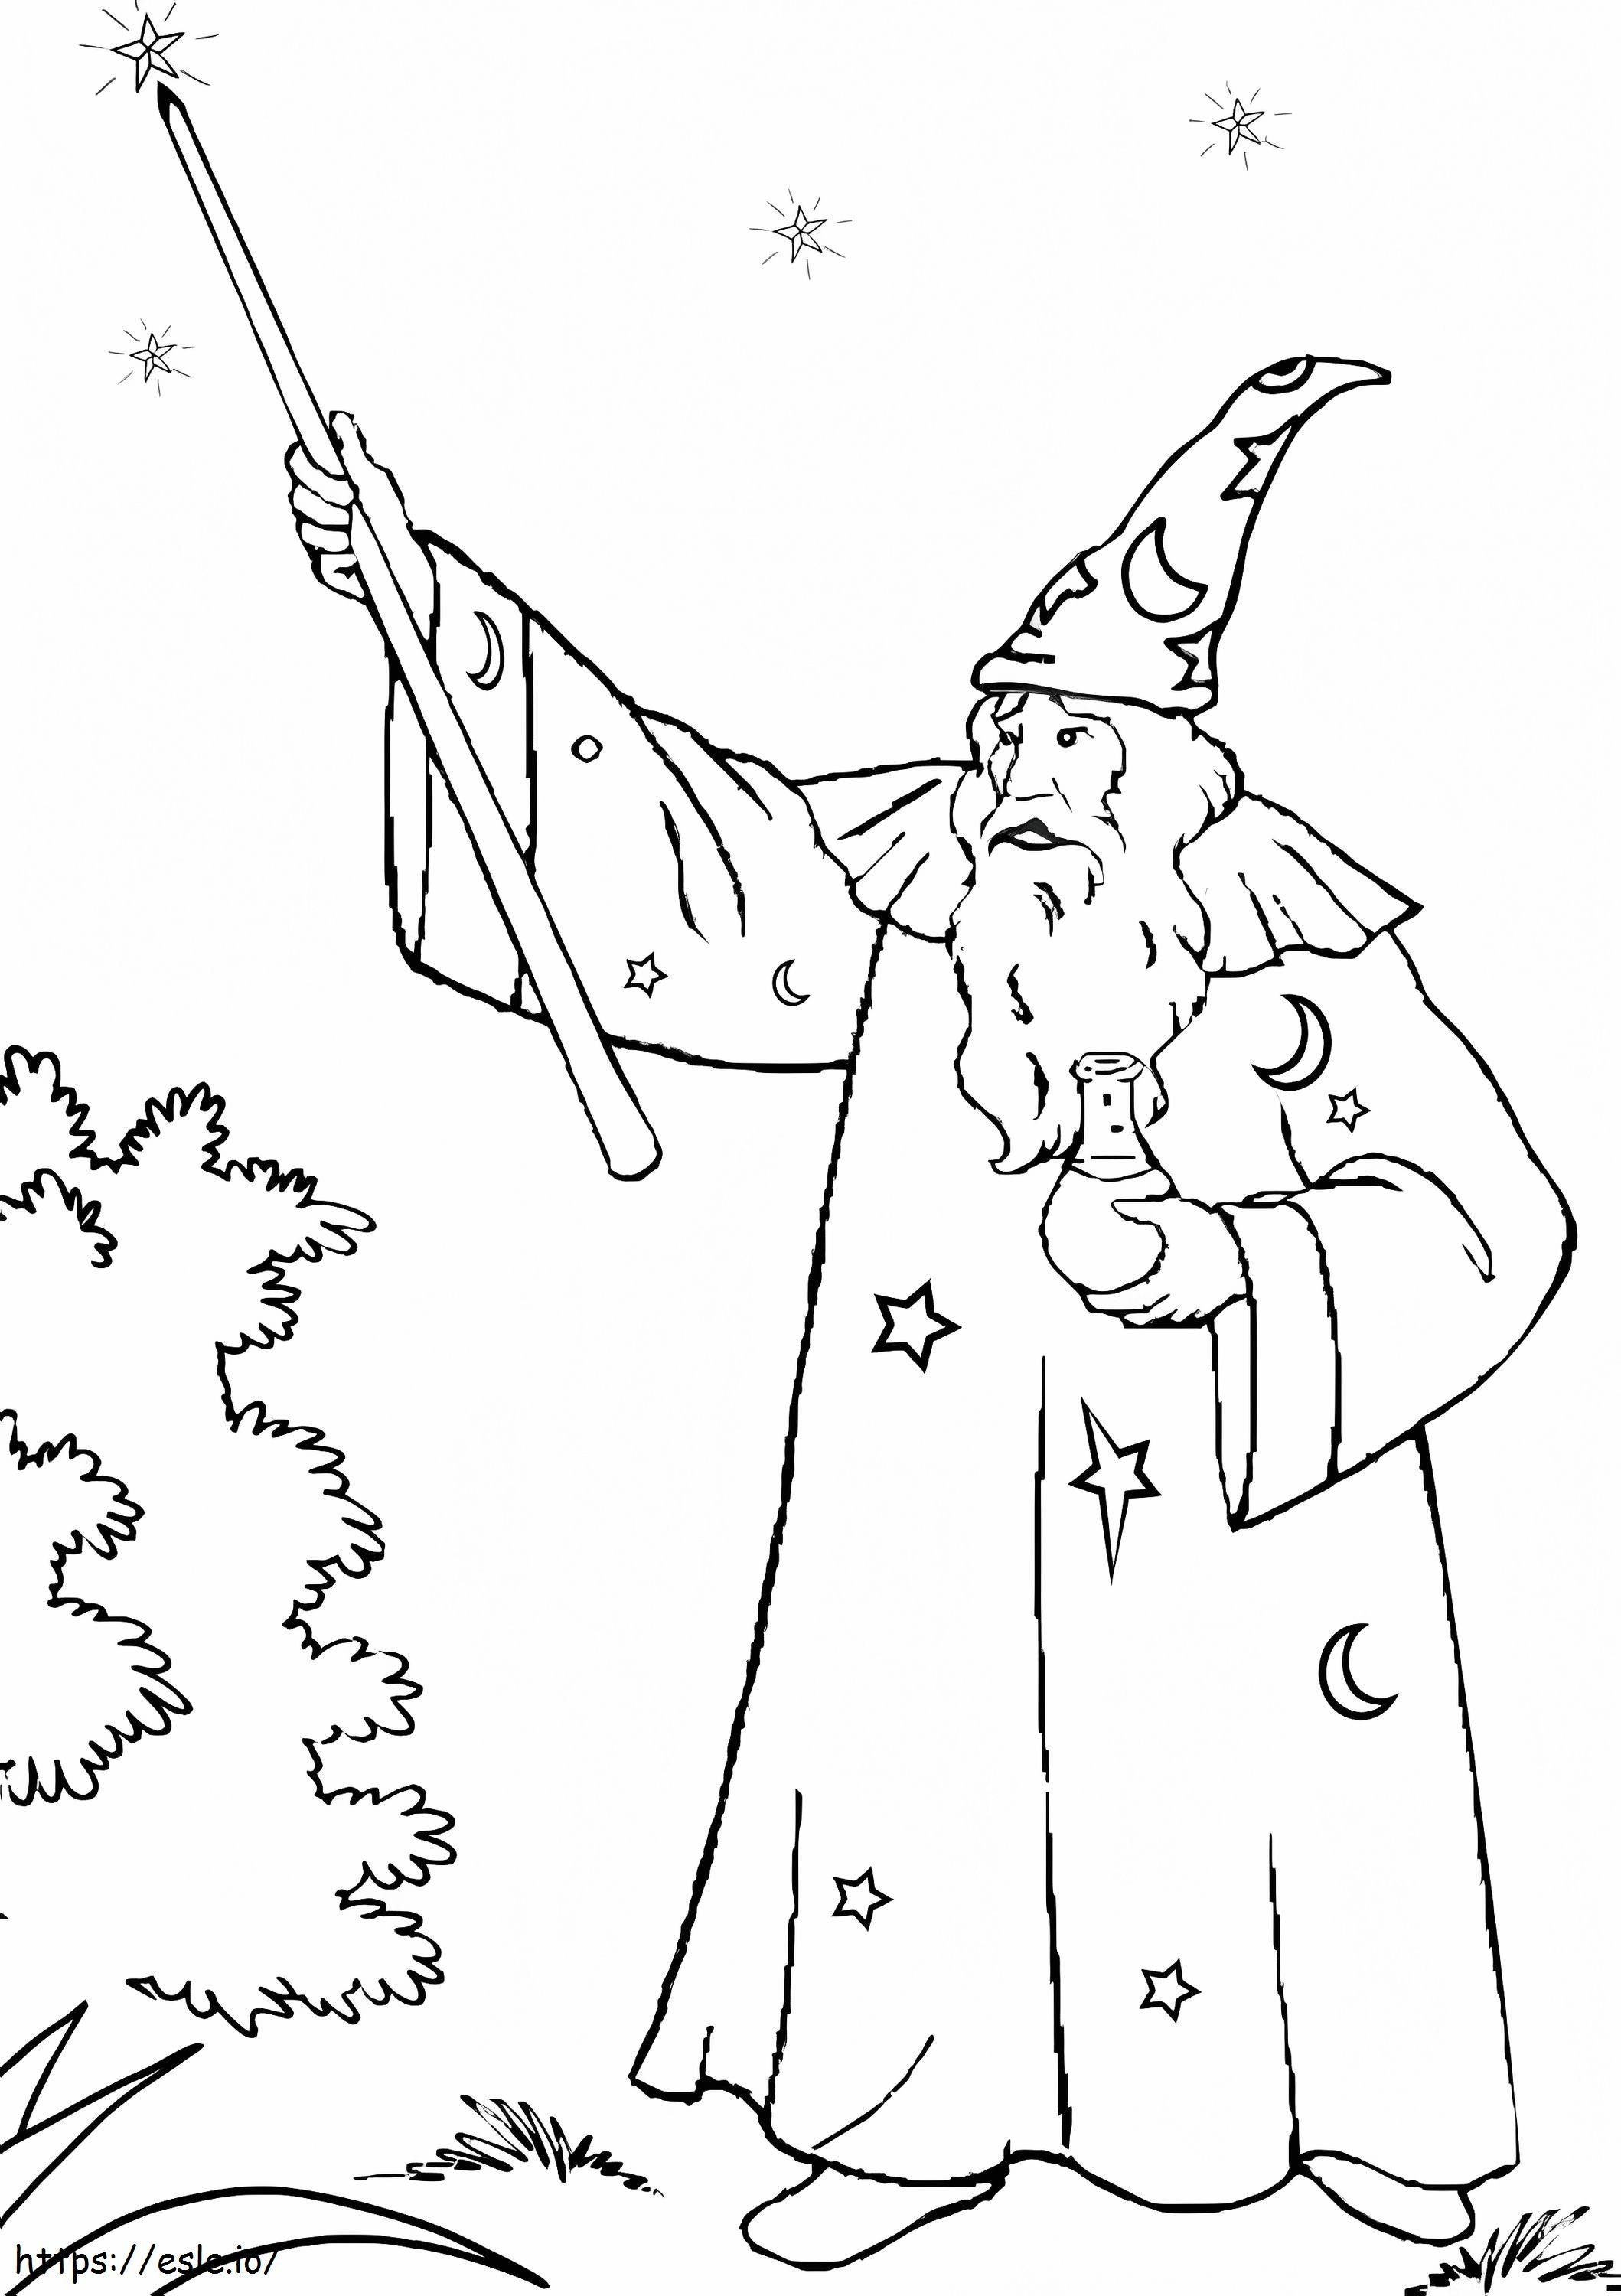 Merlin, der Zauberer, der einen Zauberstab hält ausmalbilder